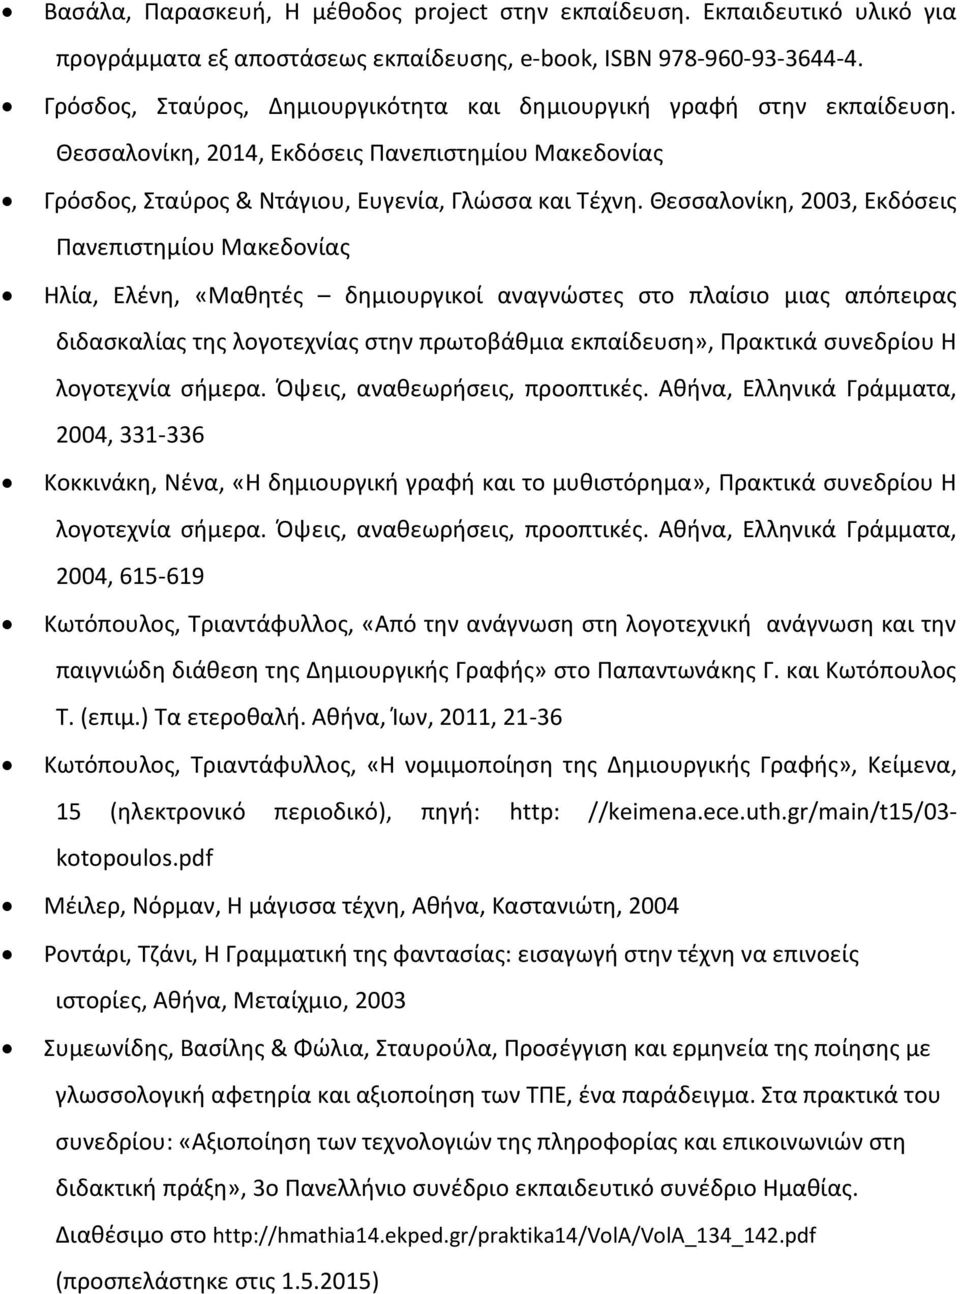 Θεσσαλονίκη, 2003, Εκδόσεις Πανεπιστημίου Μακεδονίας Ηλία, Ελένη, «Μαθητές δημιουργικοί αναγνώστες στο πλαίσιο μιας απόπειρας διδασκαλίας της λογοτεχνίας στην πρωτοβάθμια εκπαίδευση», Πρακτικά